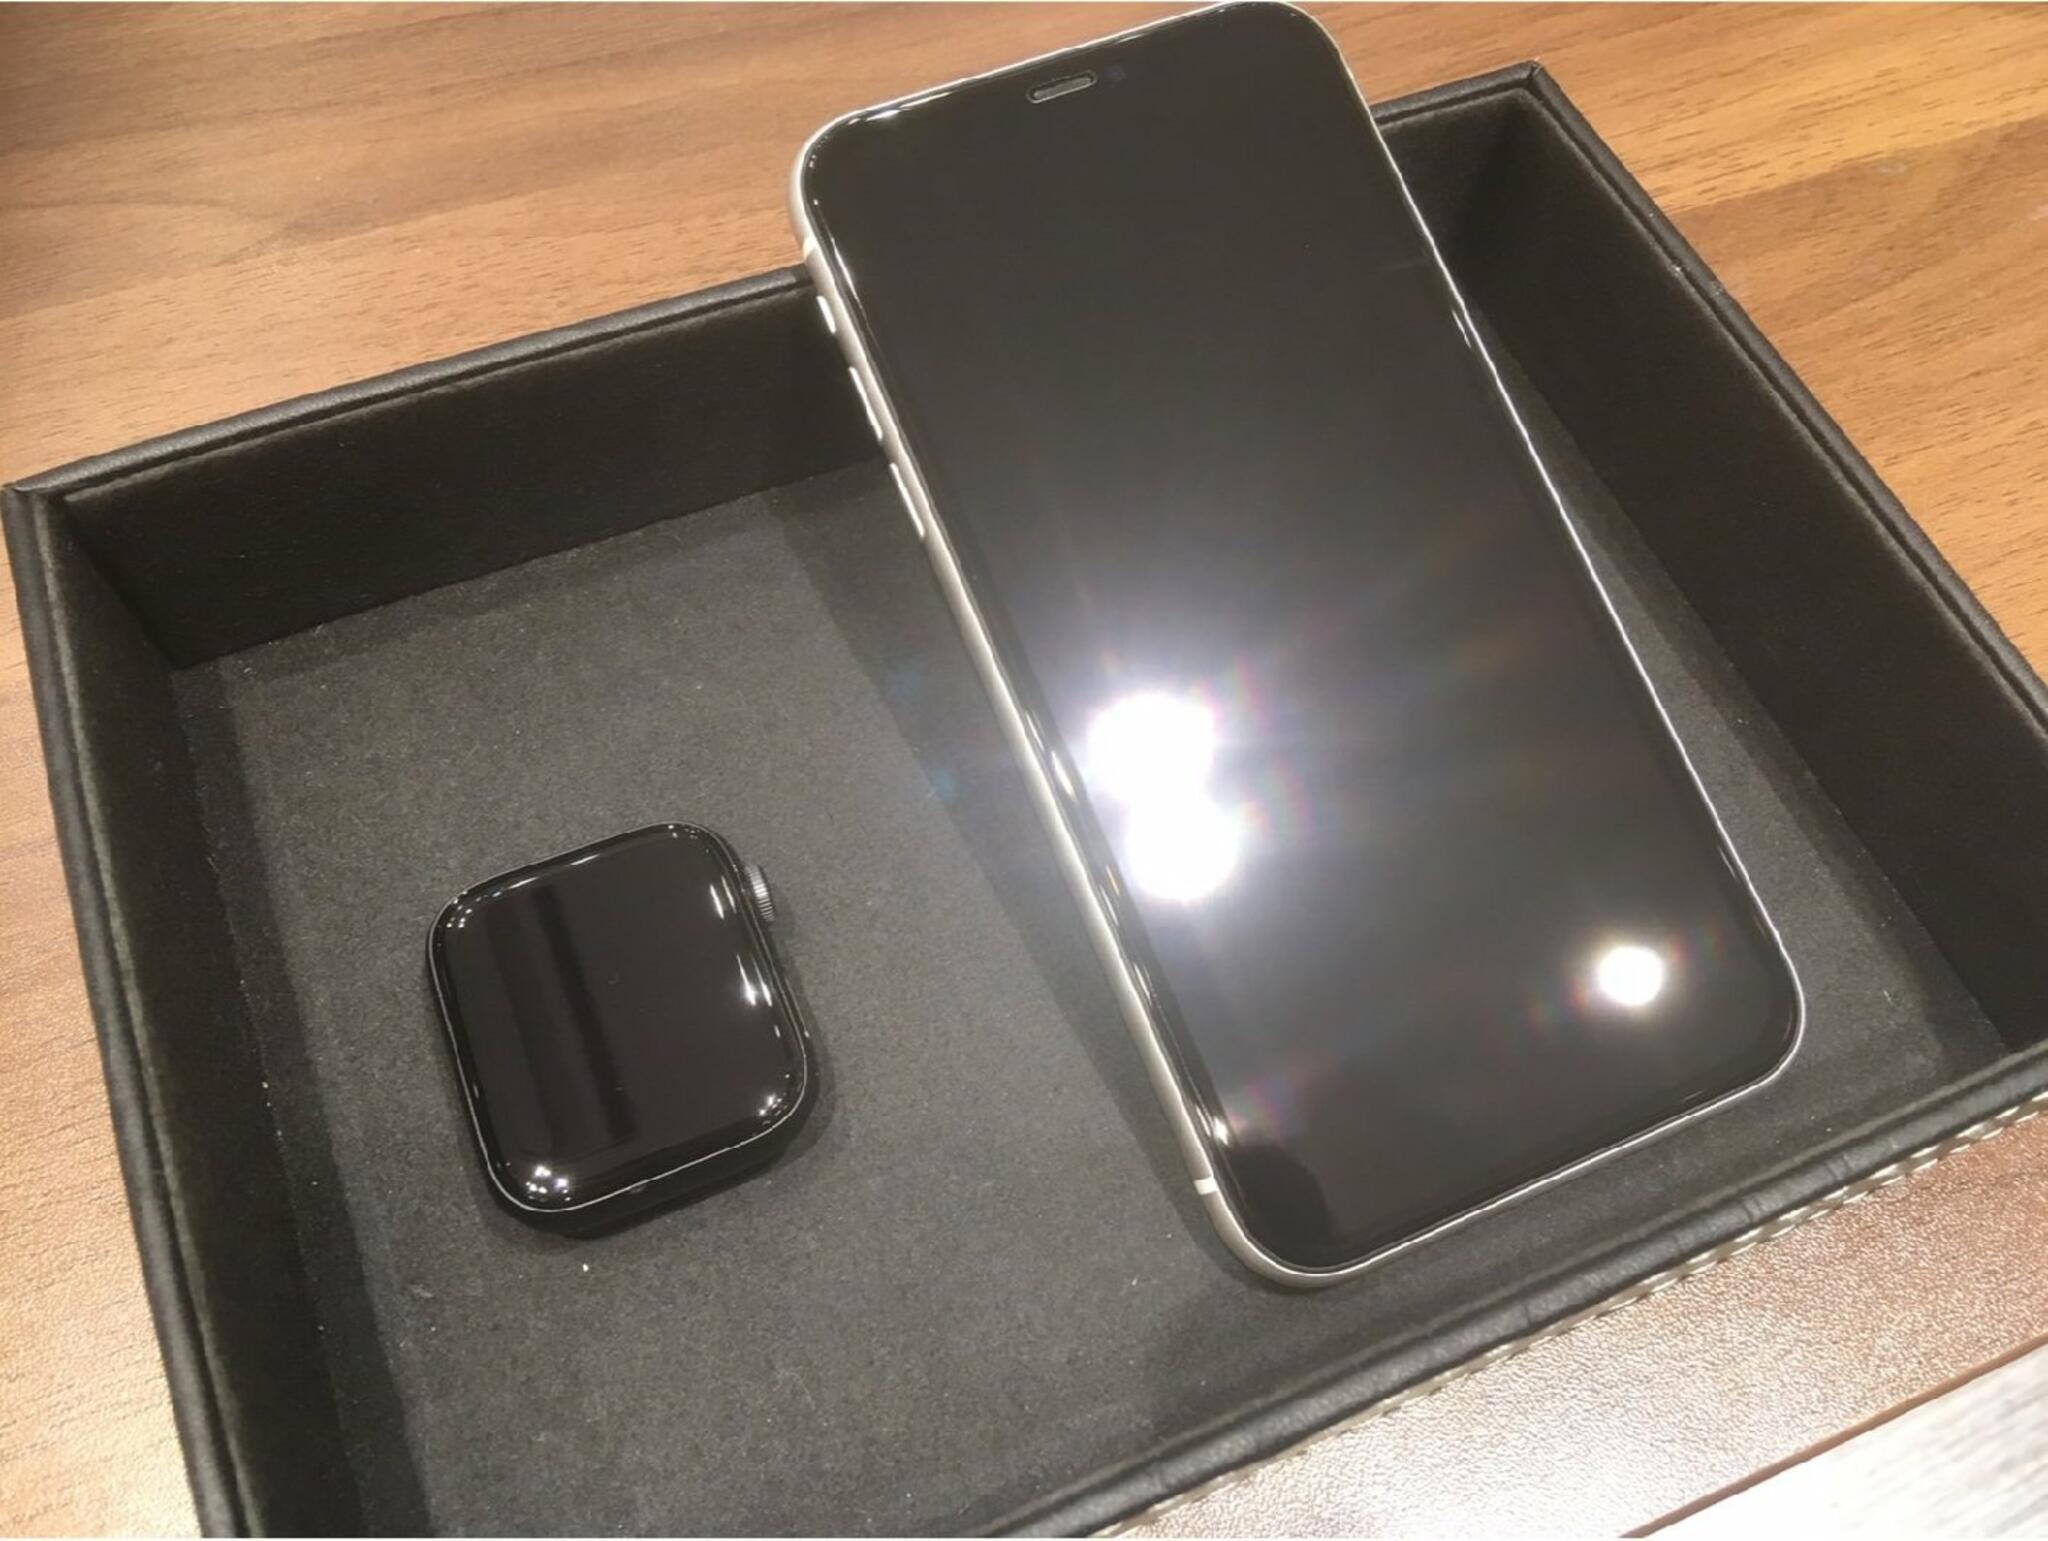 iPhone・iPad・Switch修理店 スマートクール イオンモール広島祇園店からのお知らせ(画面を割らない為にもガラスコーティングを施されませんか)に関する写真